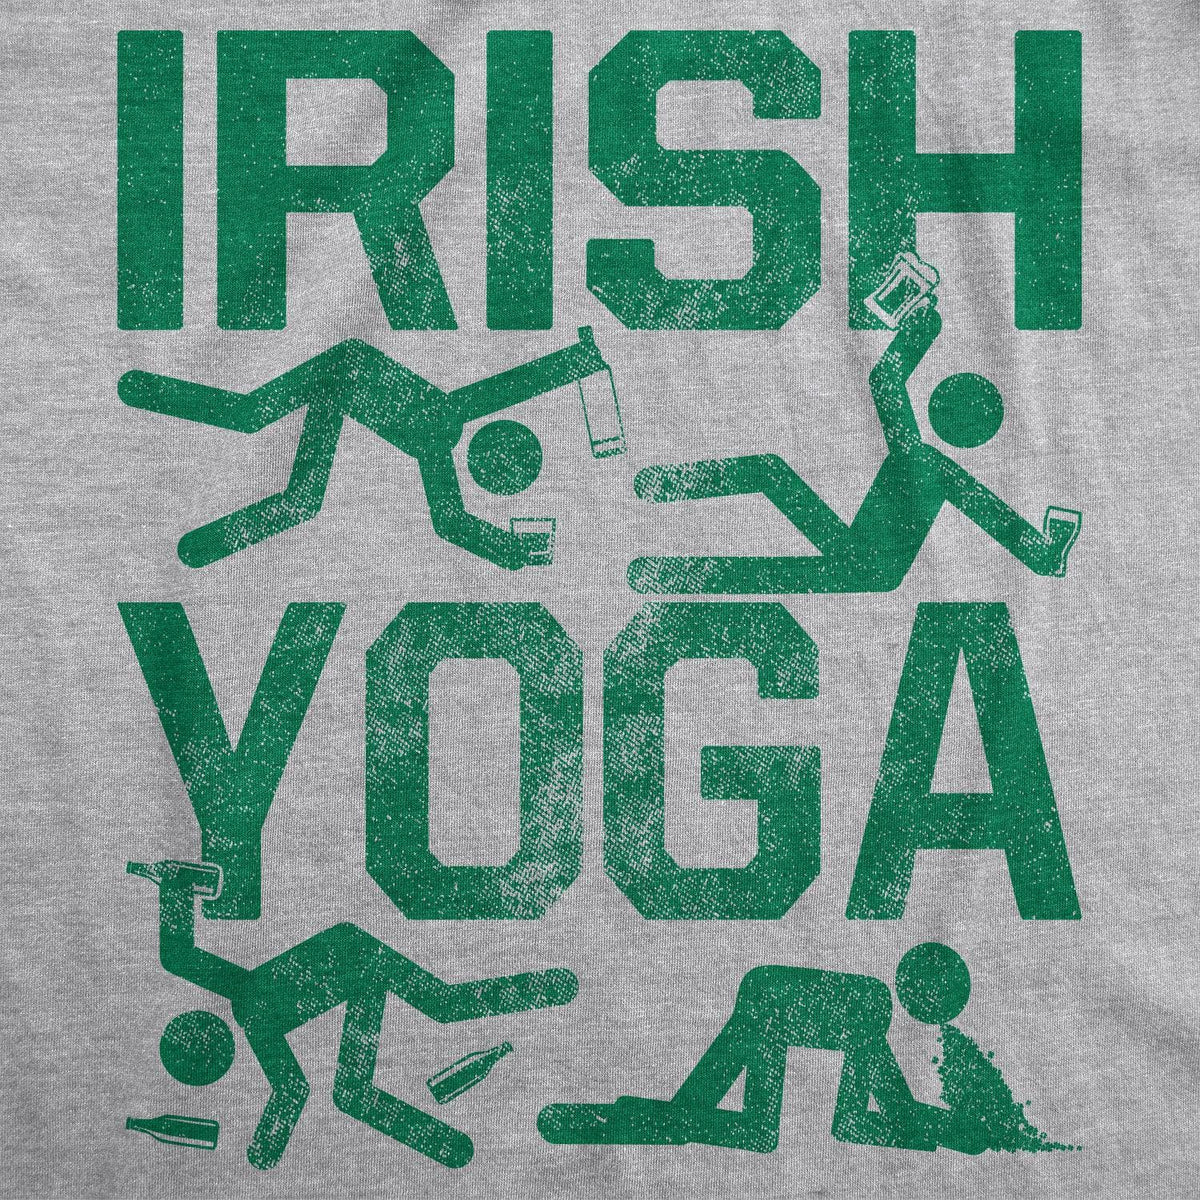 Irish Yoga Men&#39;s Tshirt  -  Crazy Dog T-Shirts